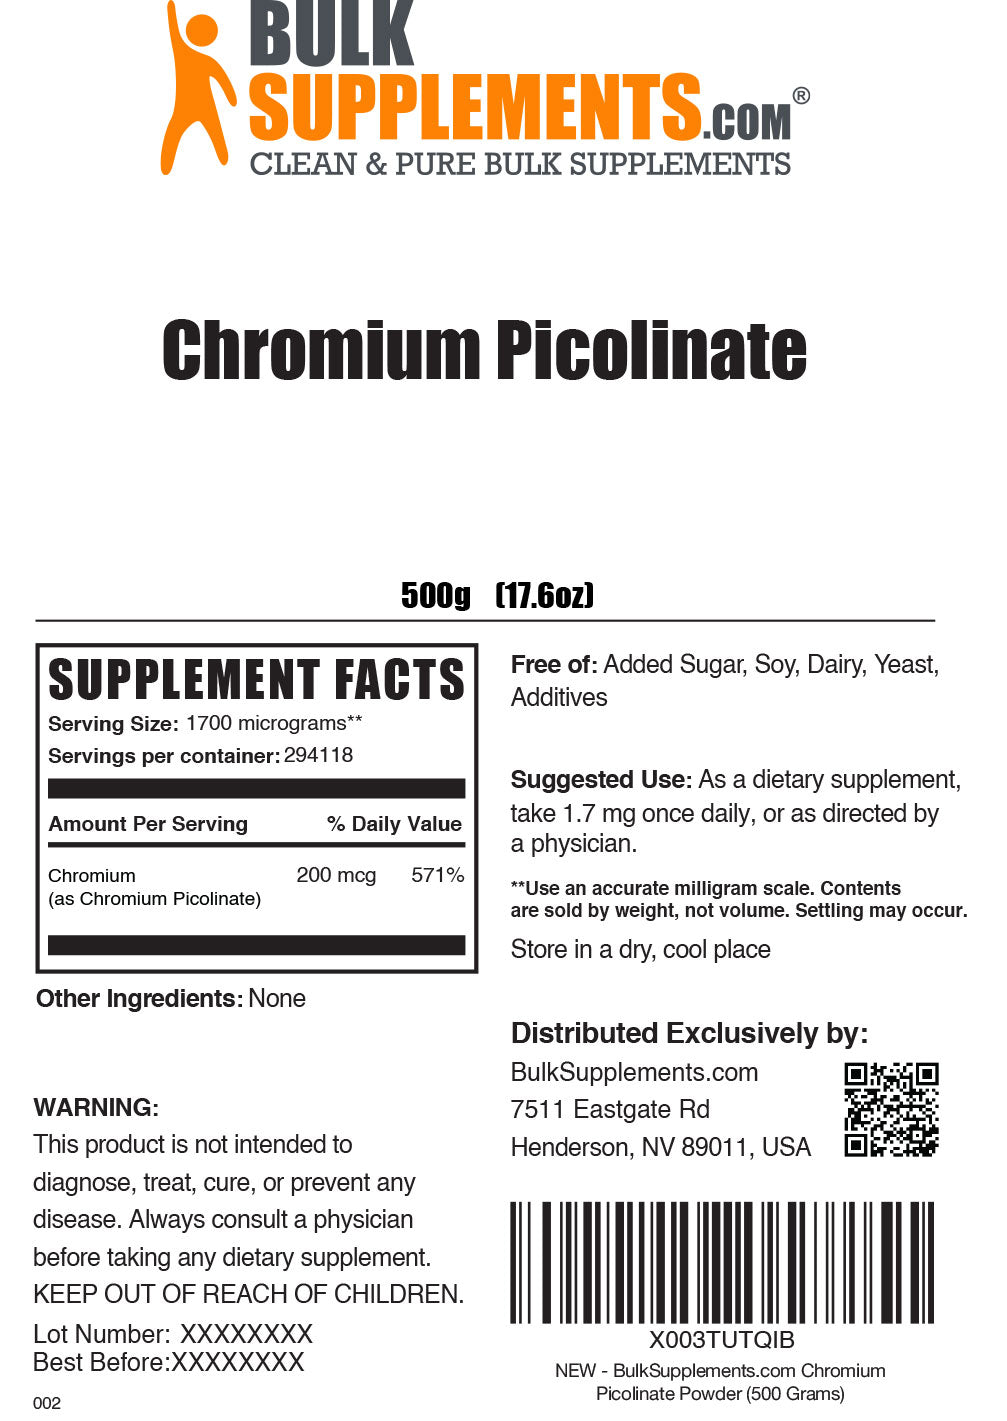 500g of Chromium Picolinate Supplement Facts